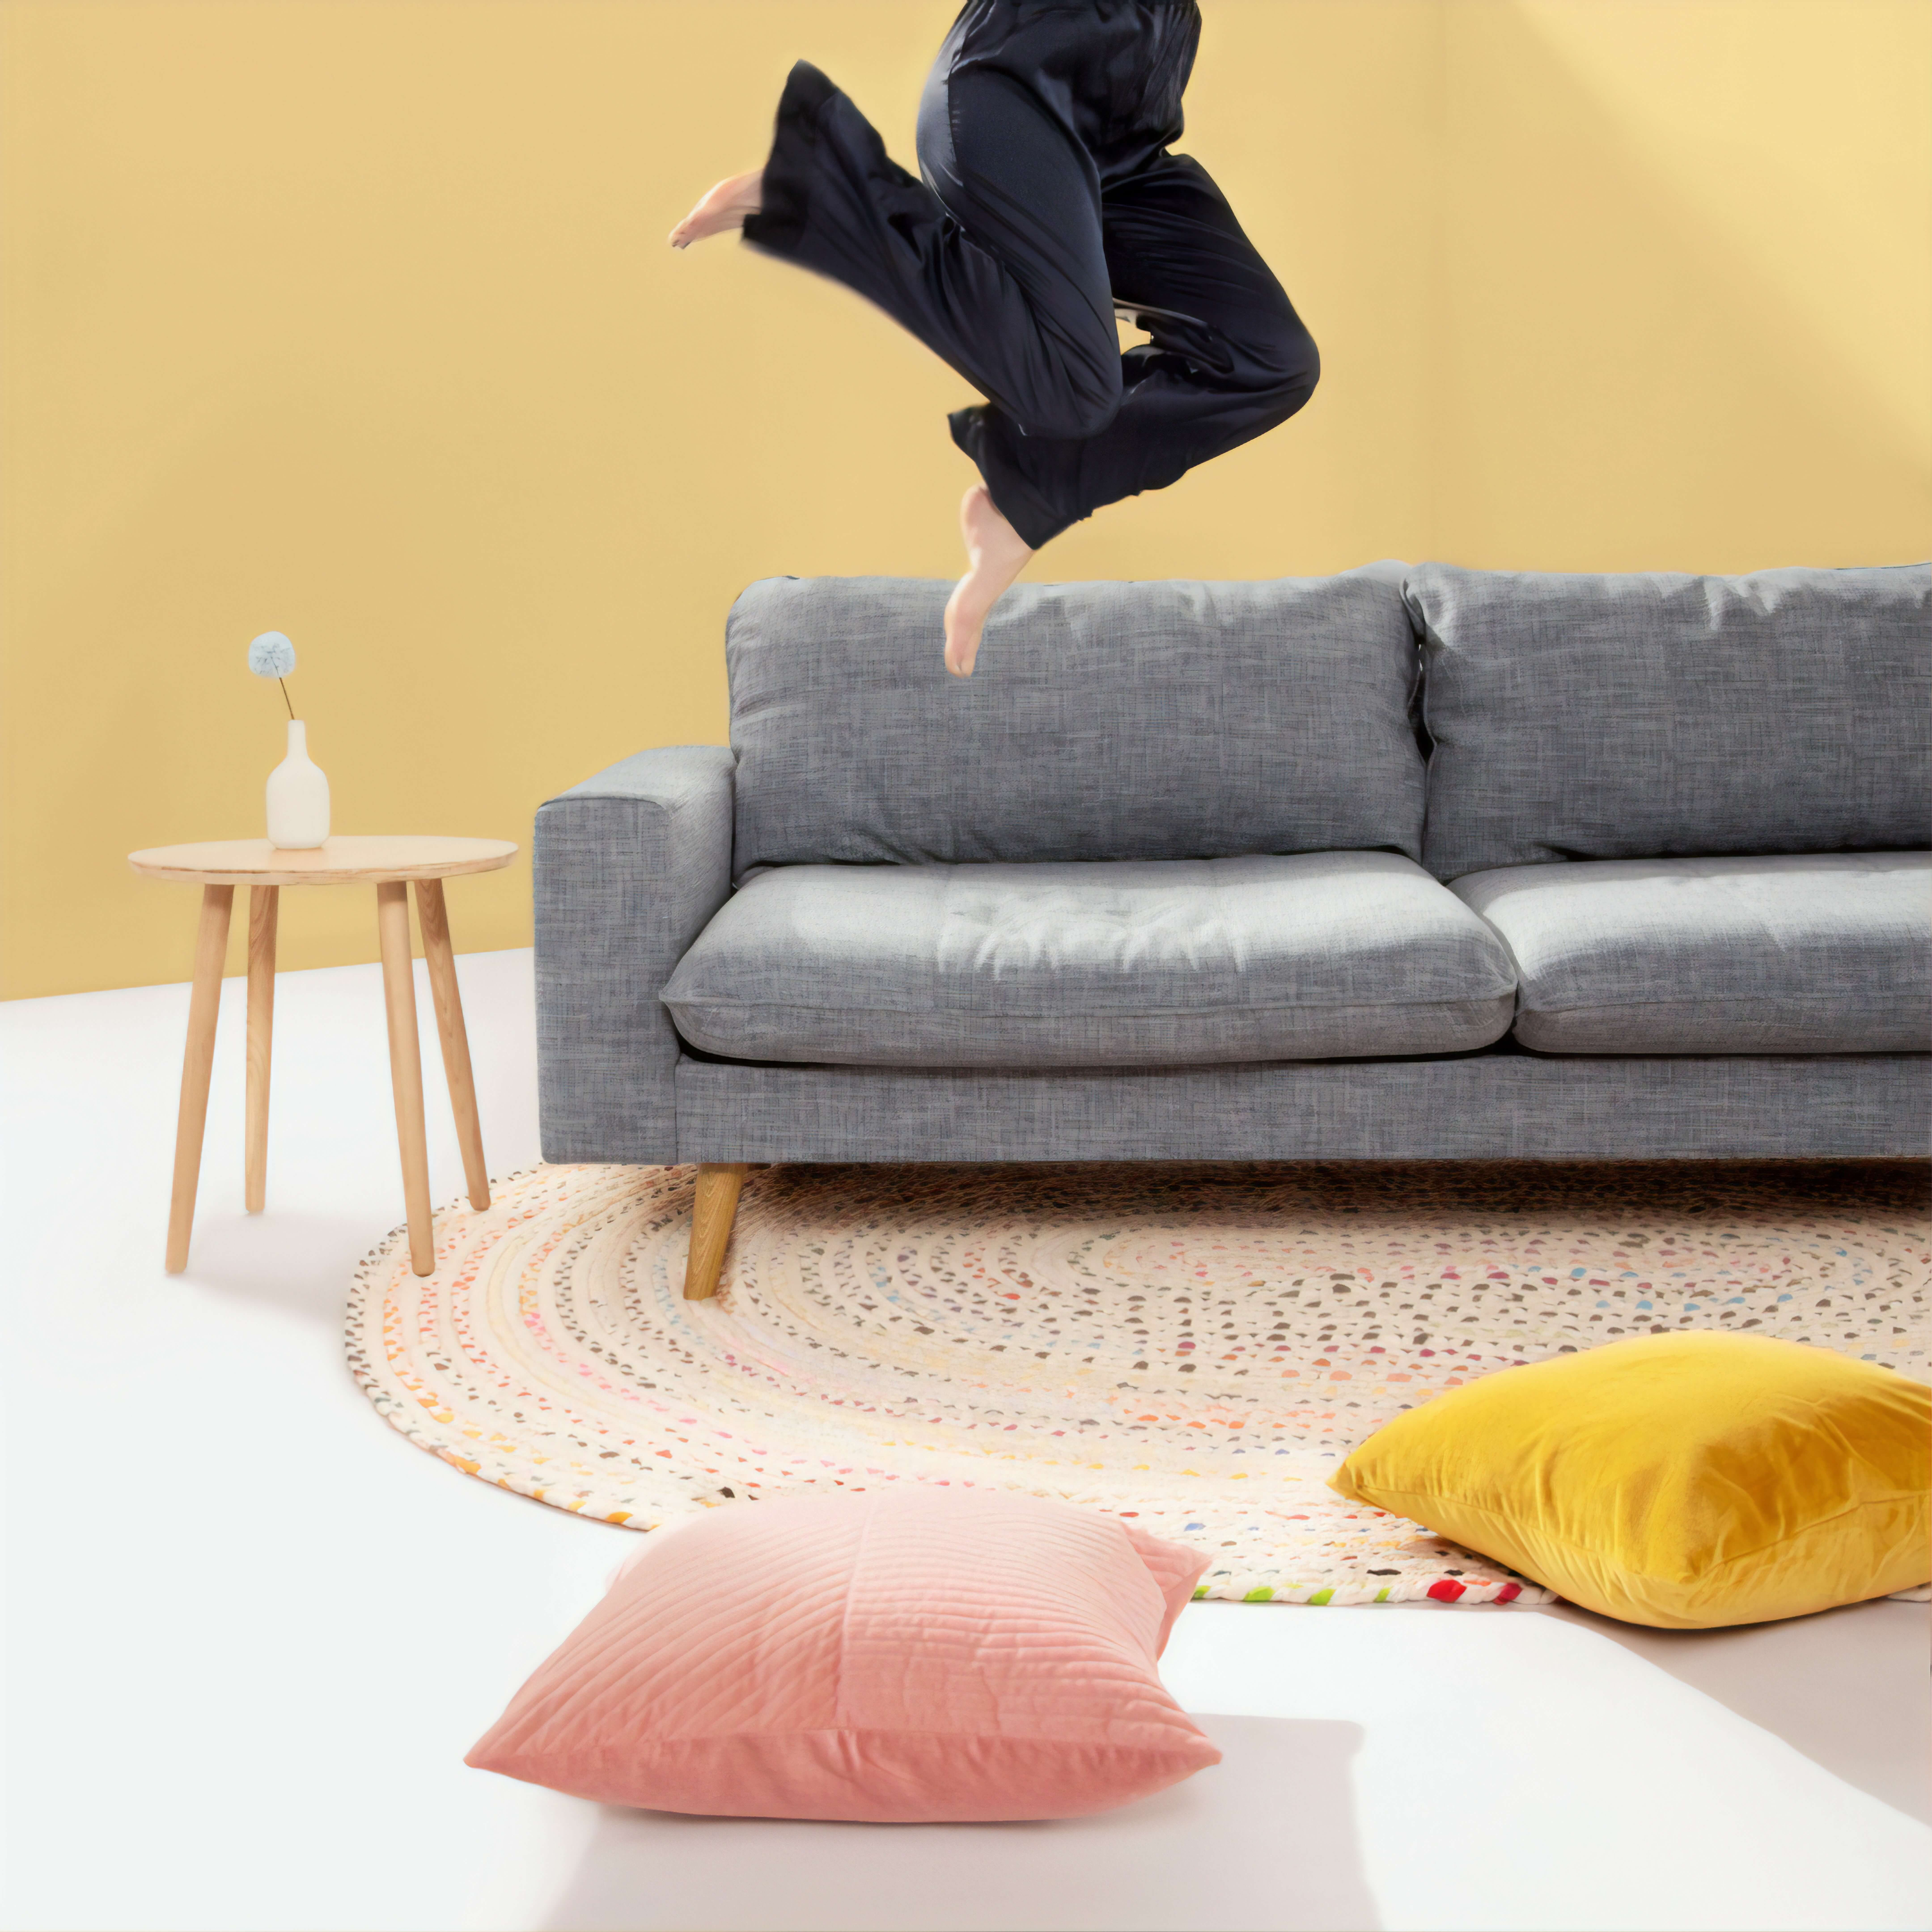 Человек прыгает на диван